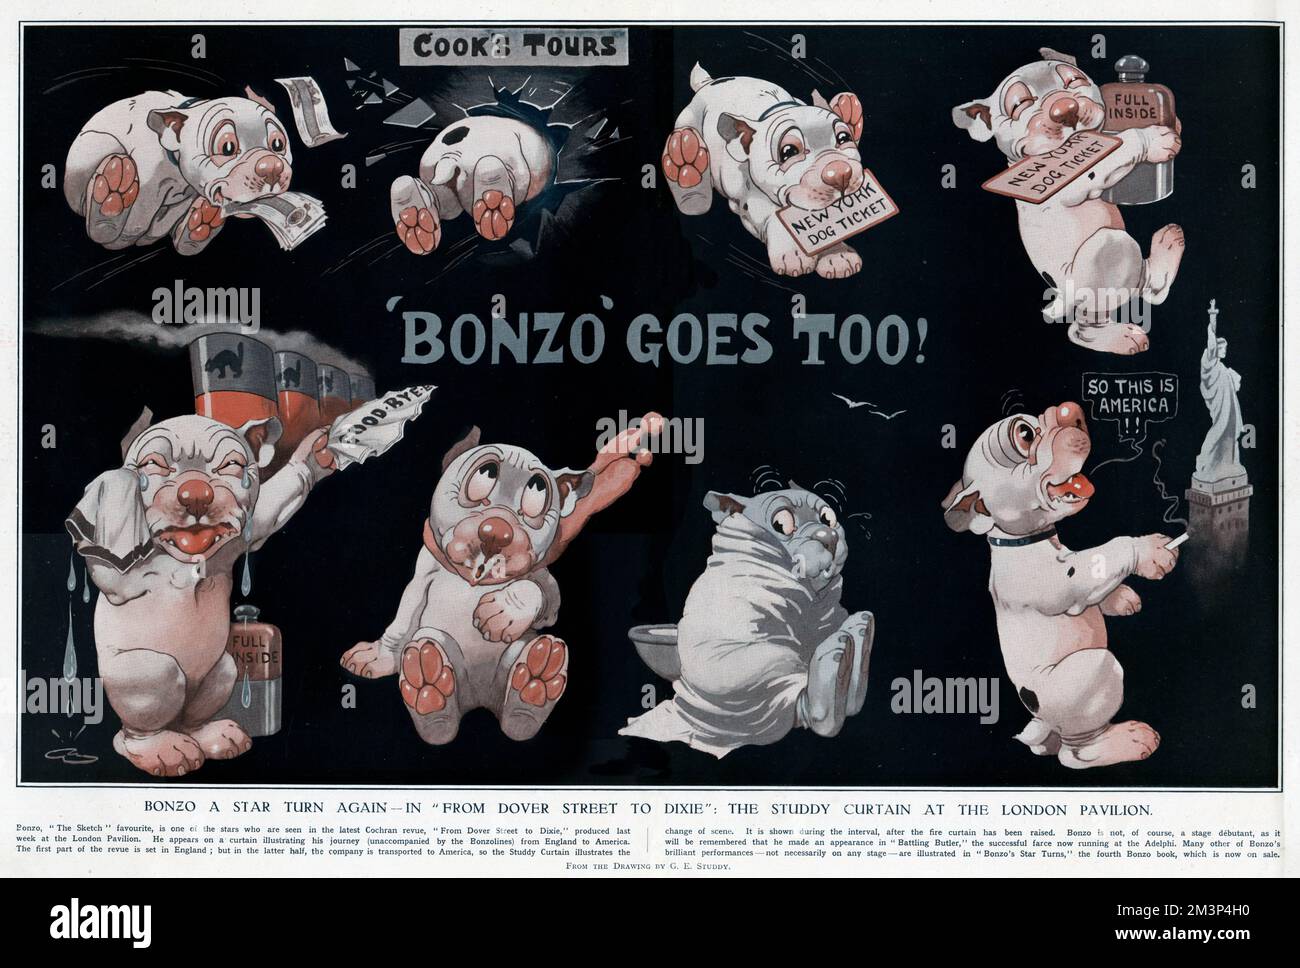 Bonzo ein Star kehrt wieder in "von der Dover Street nach Dixie": Der Studdy-Vorhang im London Pavilion. Er erschien in einer Cochran Revue, die eine Reise von England nach Amerika auf einem speziell entworfenen Vorhang darstellte, der während der Zeit nach dem Anheben des Feuervorhangs gezeigt wurde. George Ernest Studdy (1878-1948) war der Schöpfer von „Bonzo“, einem kleinen Hund mit untertassenähnlichen Augen und wahlloser Zucht, der erstmals 1922 in der Skizze erschien. Der „Bonzo“-Wahnsinn durchwühlte die Welt und führte zu Postkarten, Einjahreszeitschriften, Spielzeug und anderen Waren. Das Ansehen sollte lauten: "Anwesen von George Studdy/Gresham Mark" Stockfoto